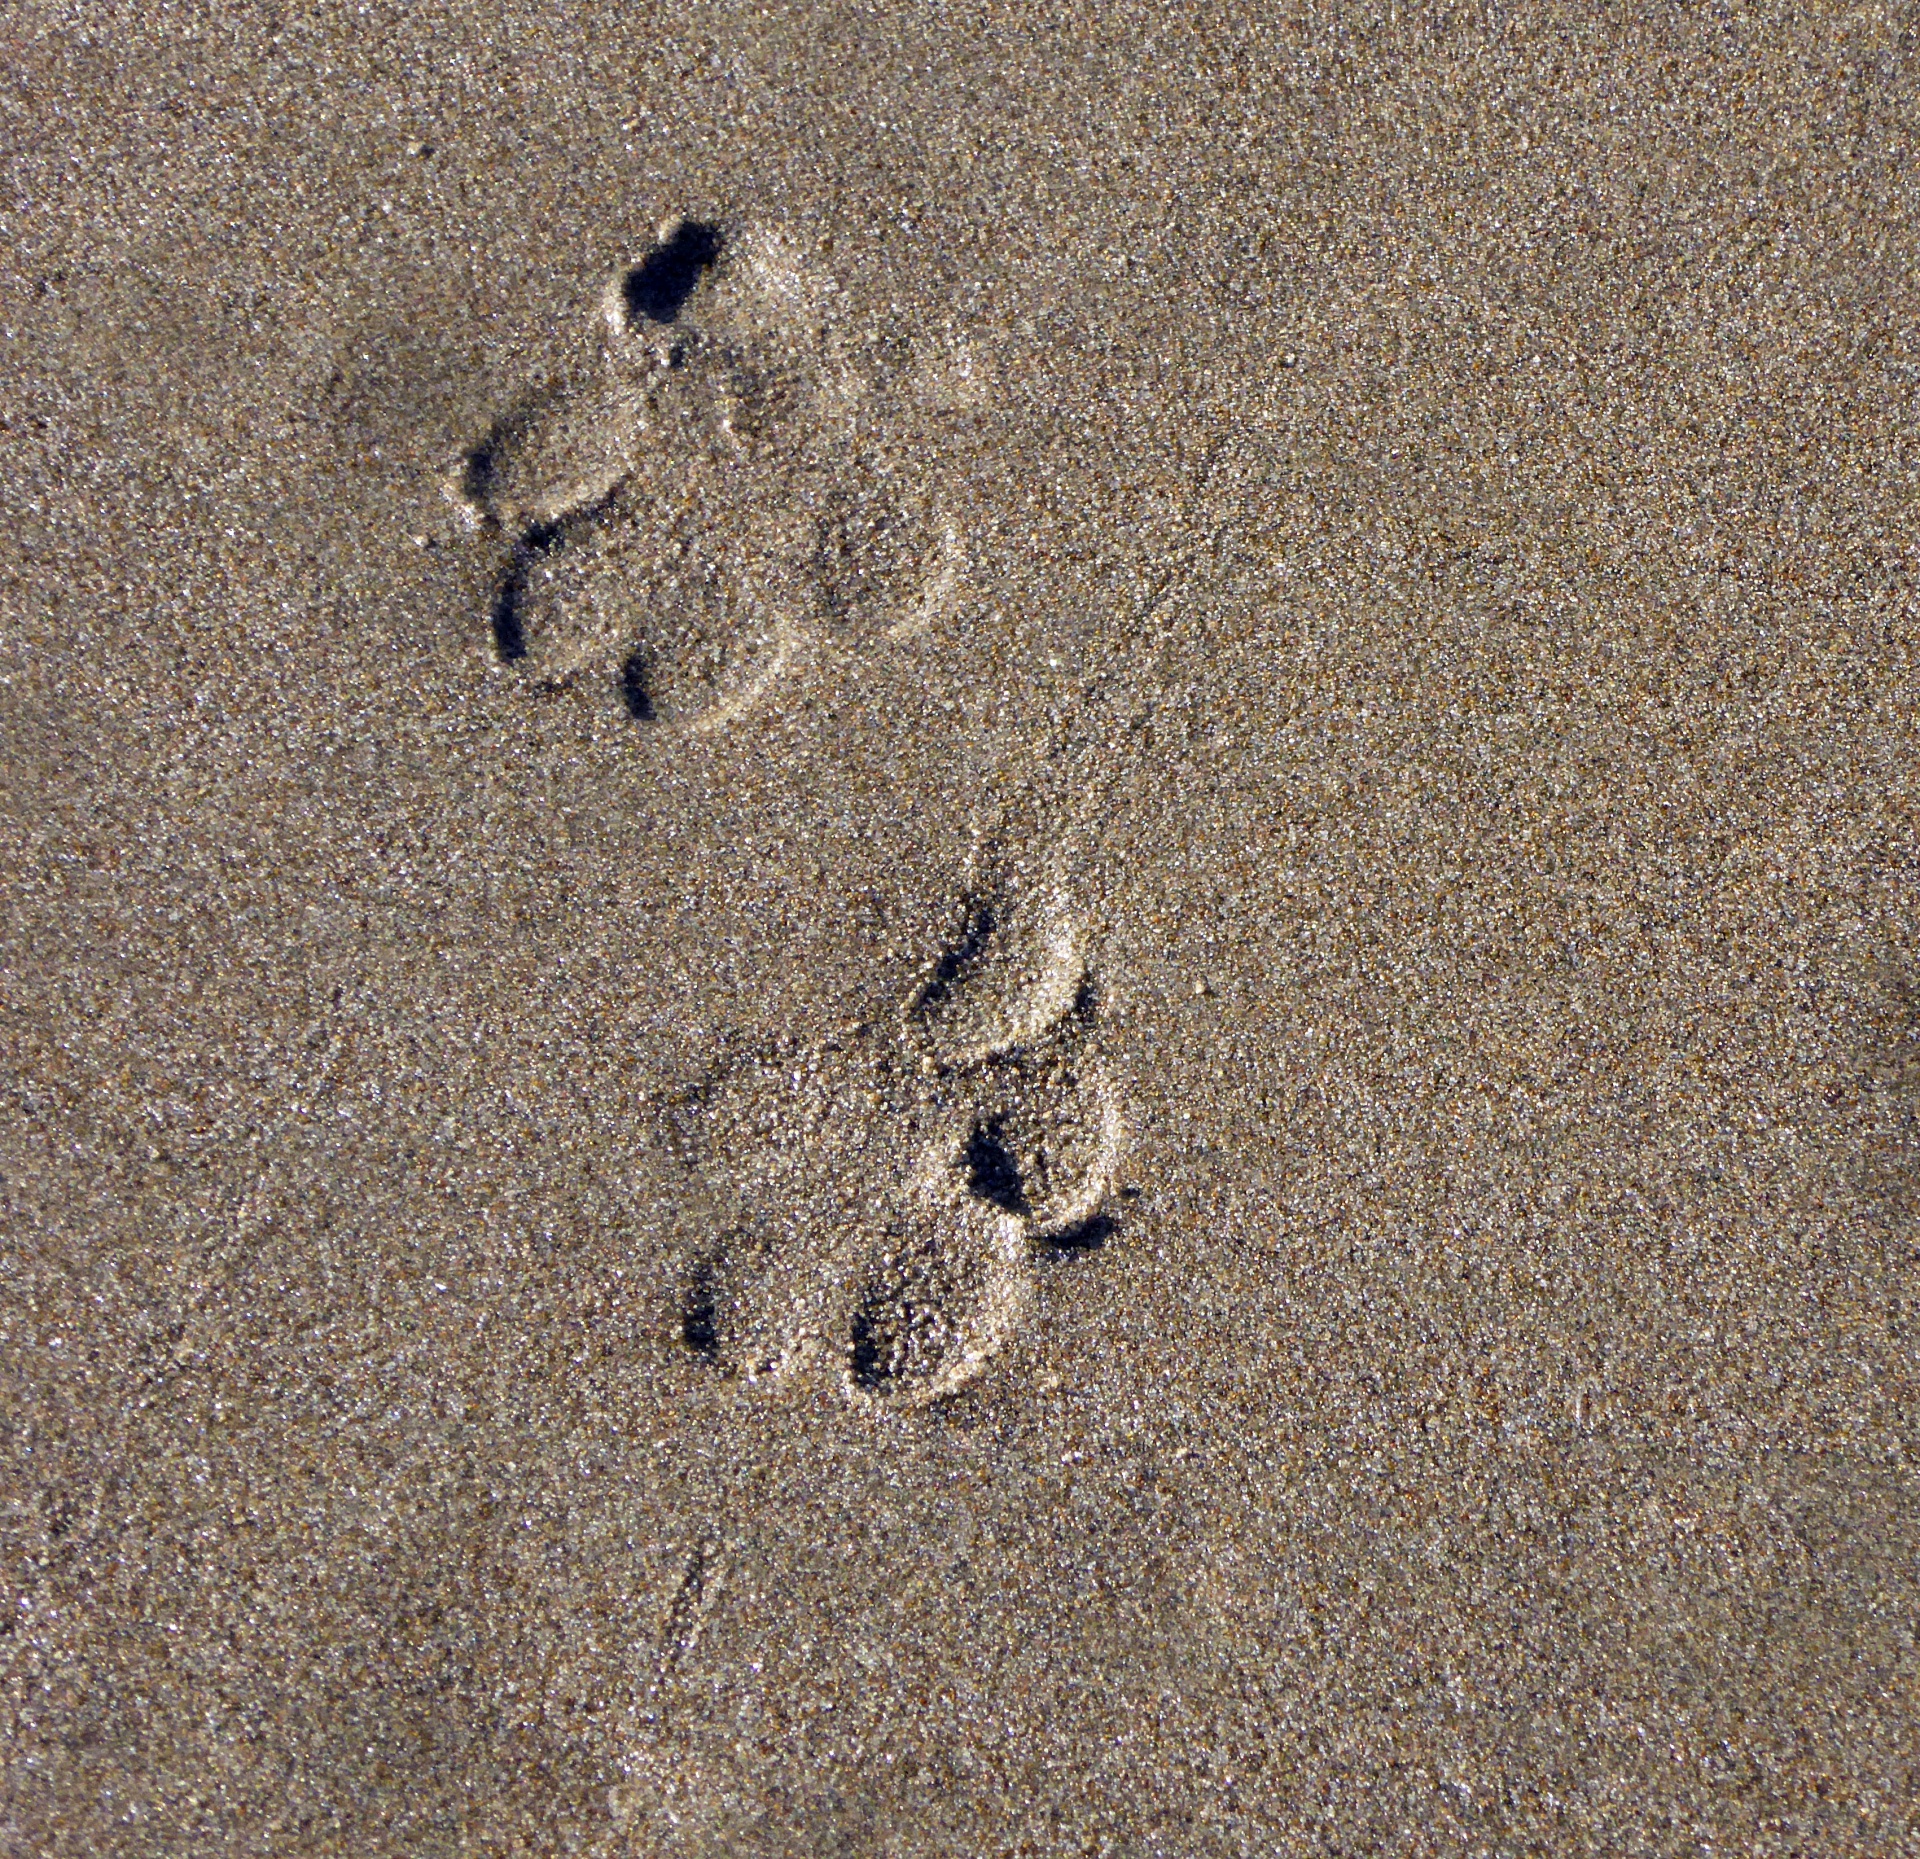 След недели будет. Следы. Следы на песке. Кошачьи следы на песке. Следы кота на песке.